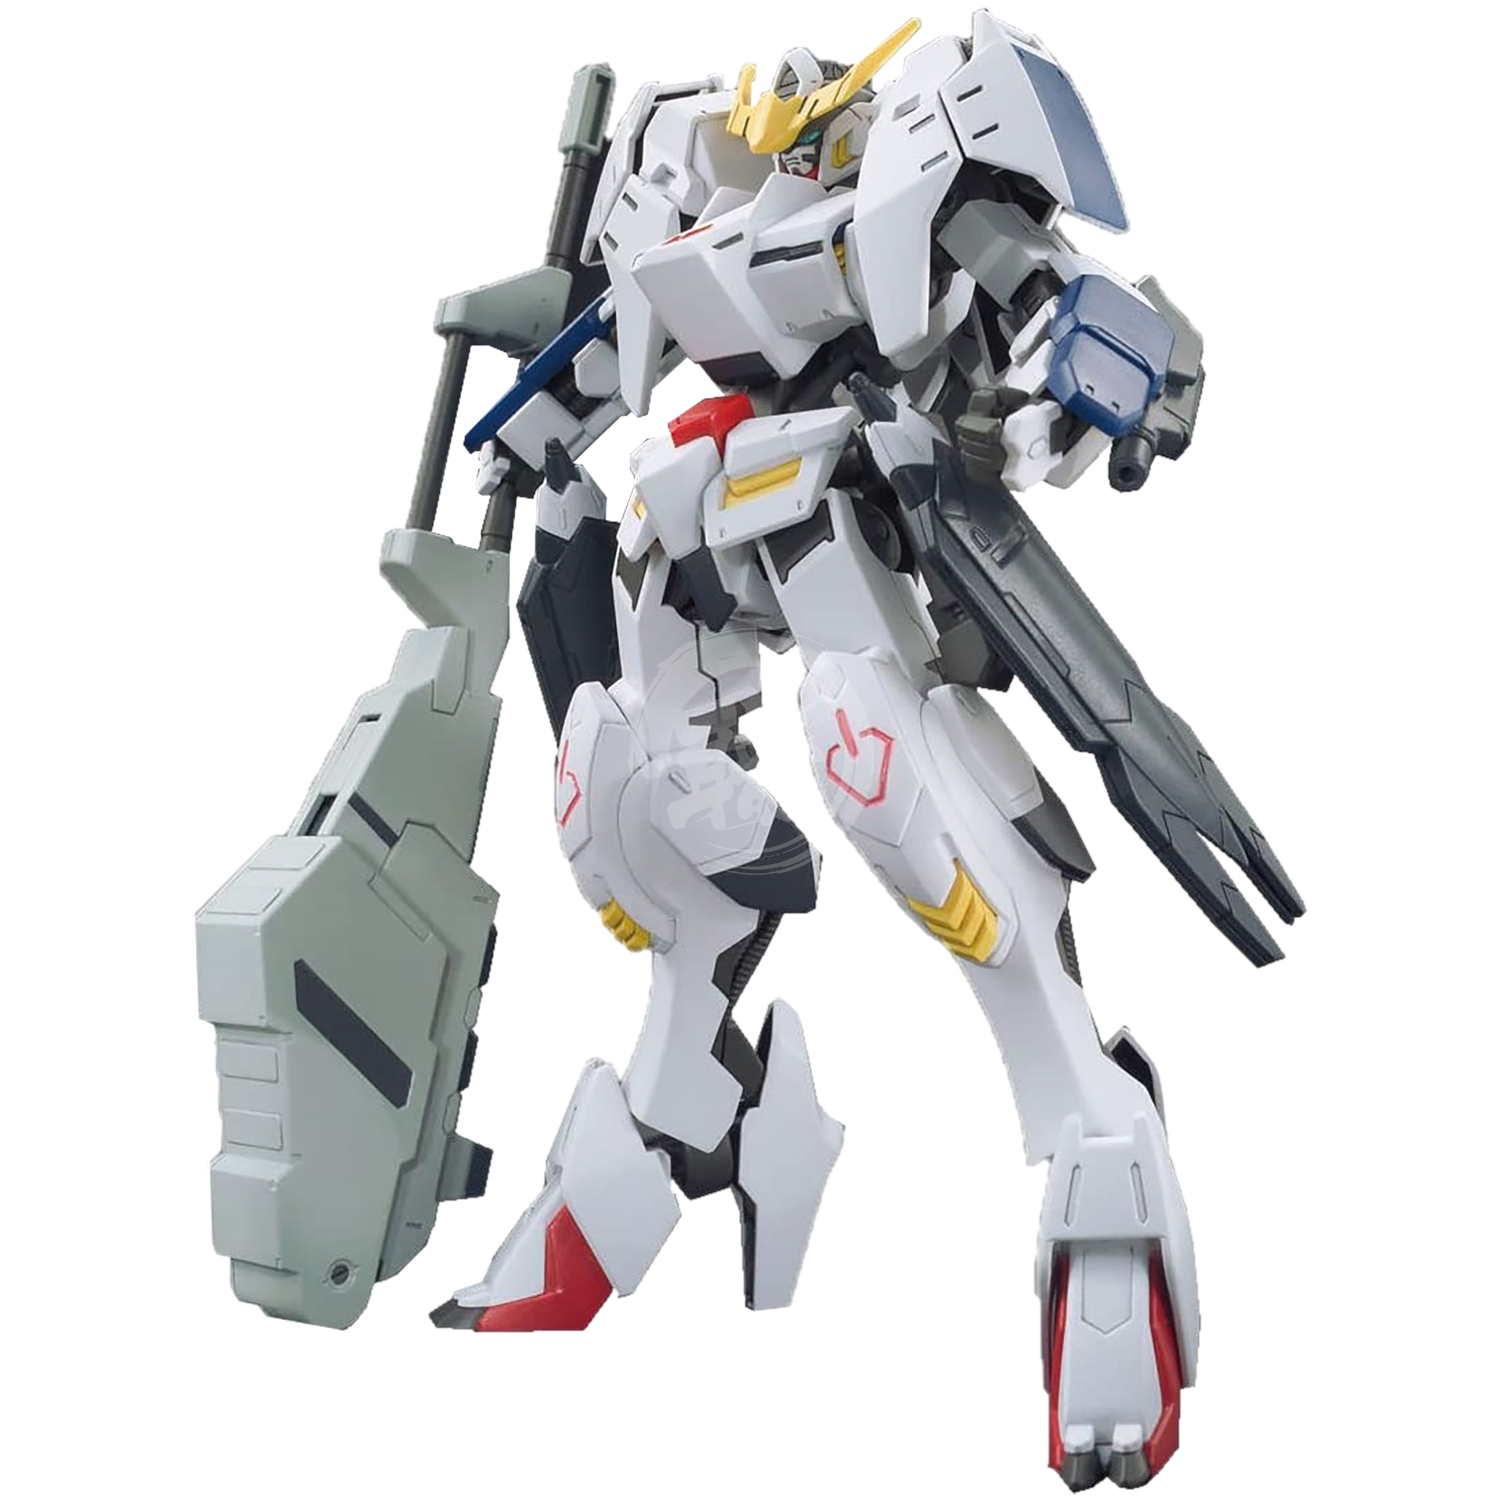 HG Gundam Barbatos  6th Form - ShokuninGunpla